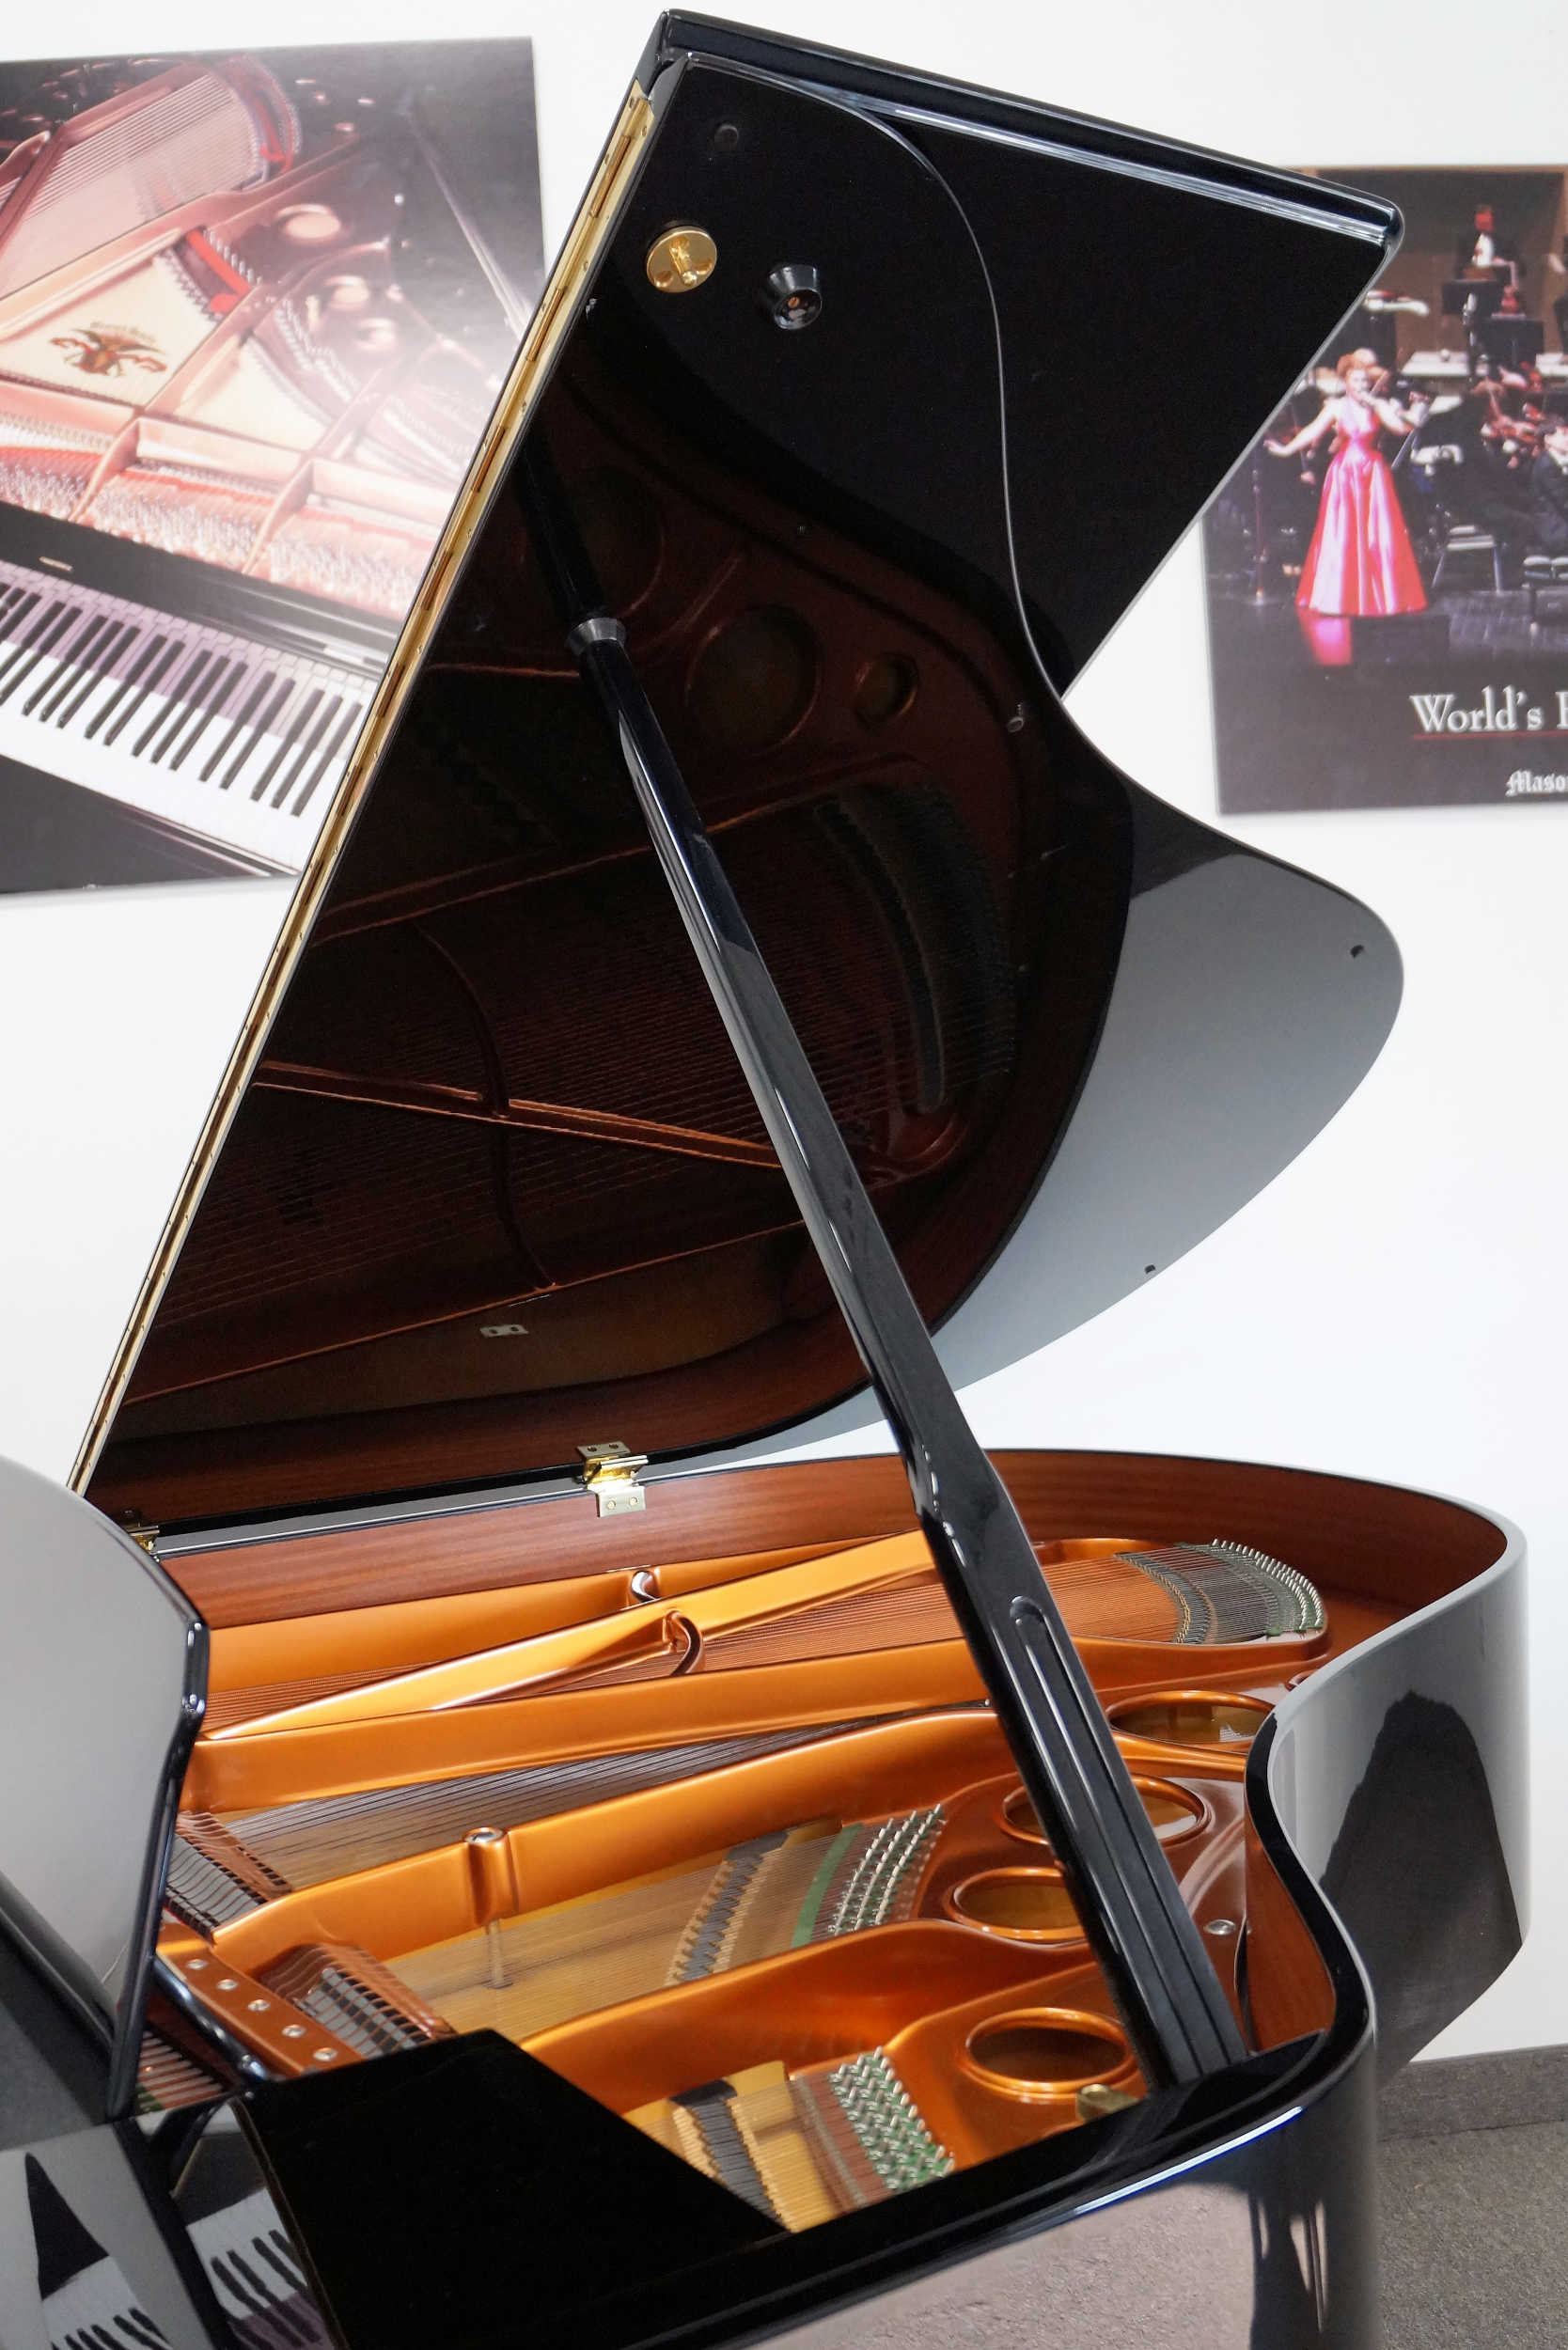 Bosendorfer 170 Grand Piano - Black Polish